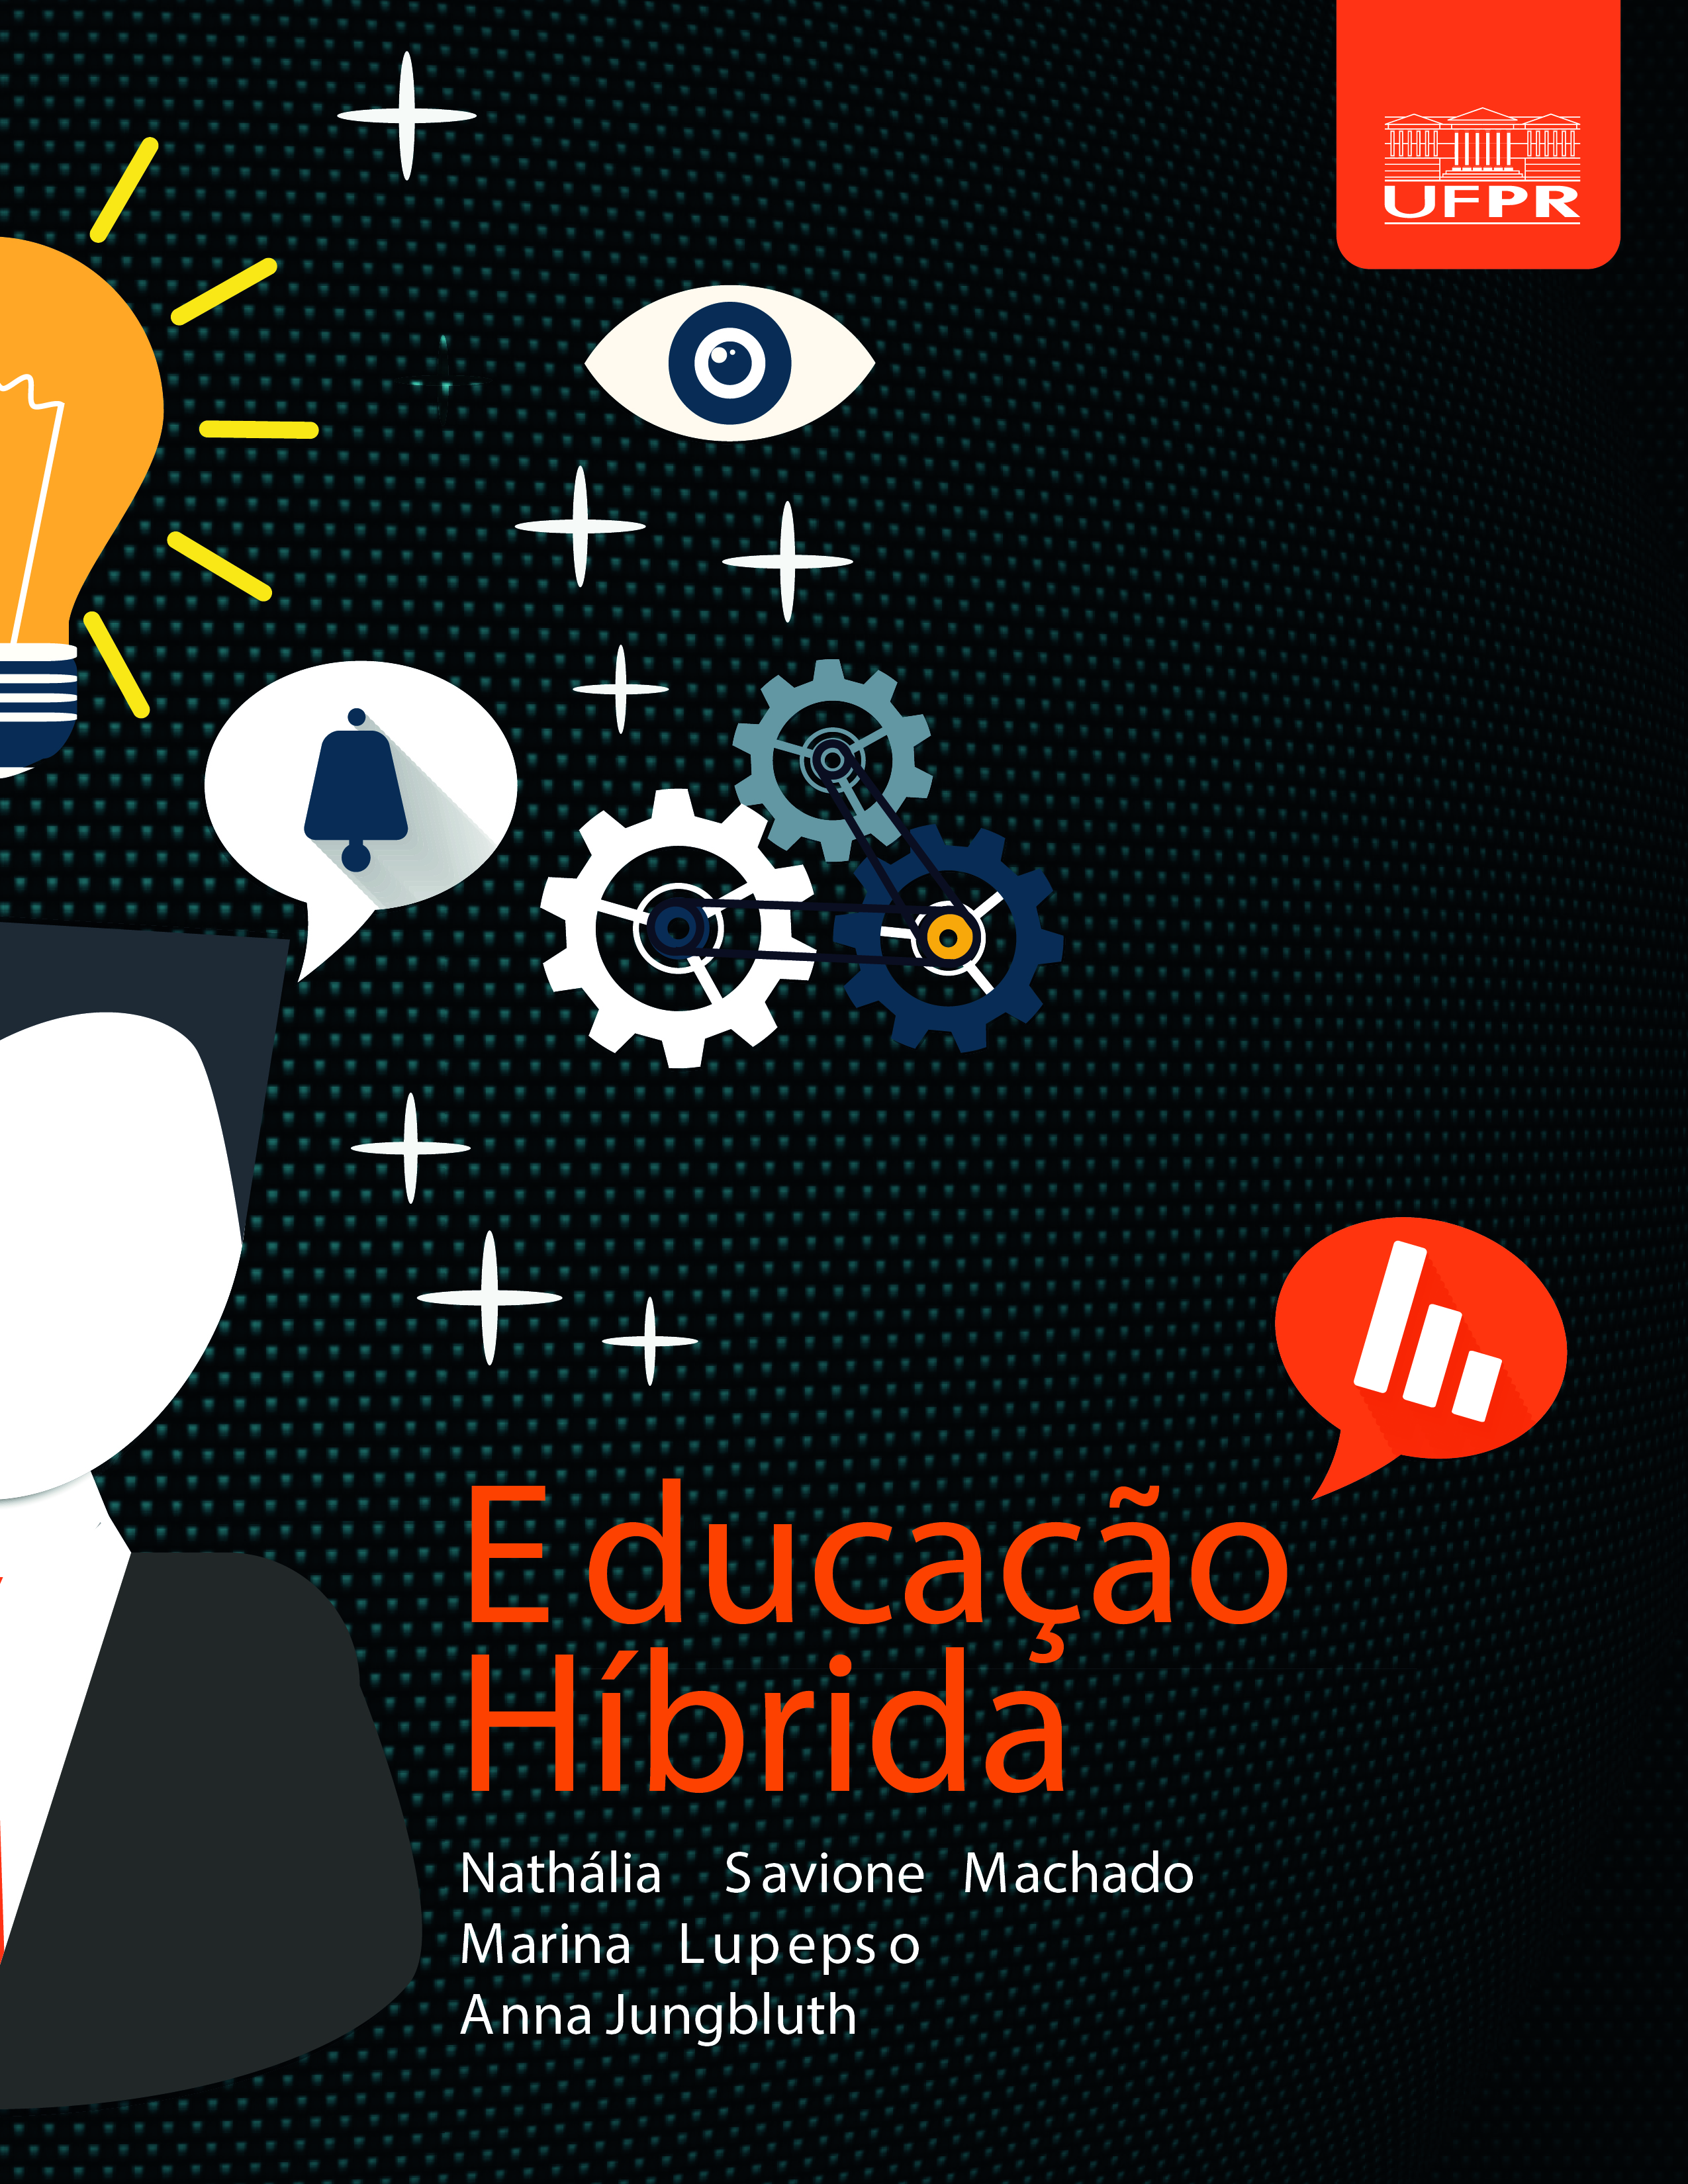 Ensino híbrido: material “Educação híbrida e seus modelos” da Universidade Federal do Paraná